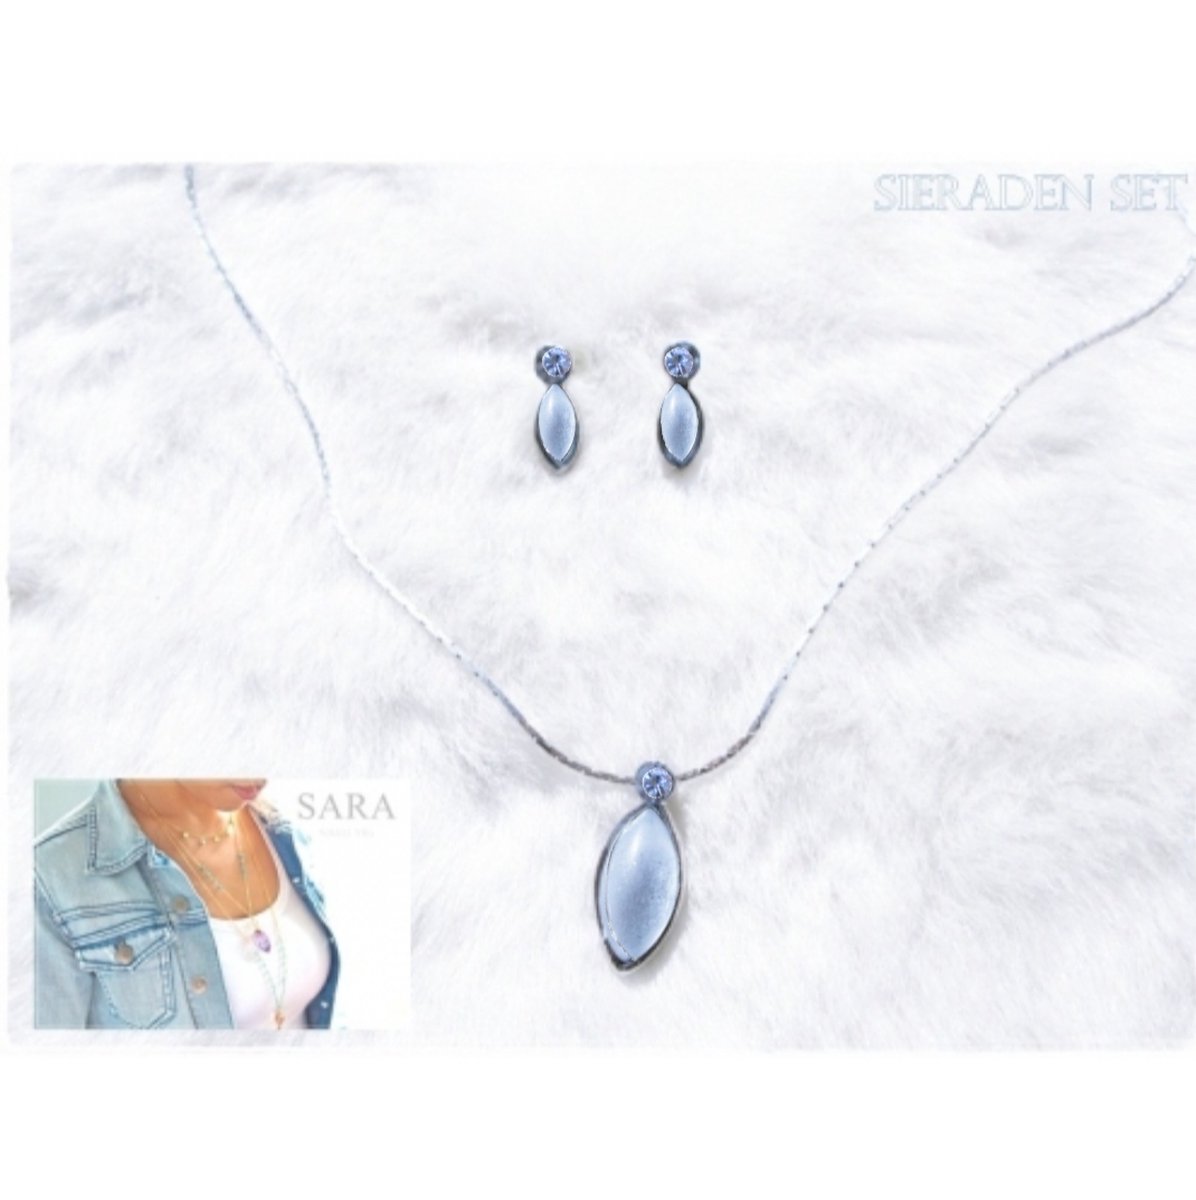 SARA jewelry SET - ketting met hanger + bijpassende oorstekers - licht blauw - 42 + 6 cm ketting - 1,5 x 0,5 cm oorstekers - zilvertone - volwassenen jeugd kinderen- dames meisjes - casual feest bruiloft gala communie